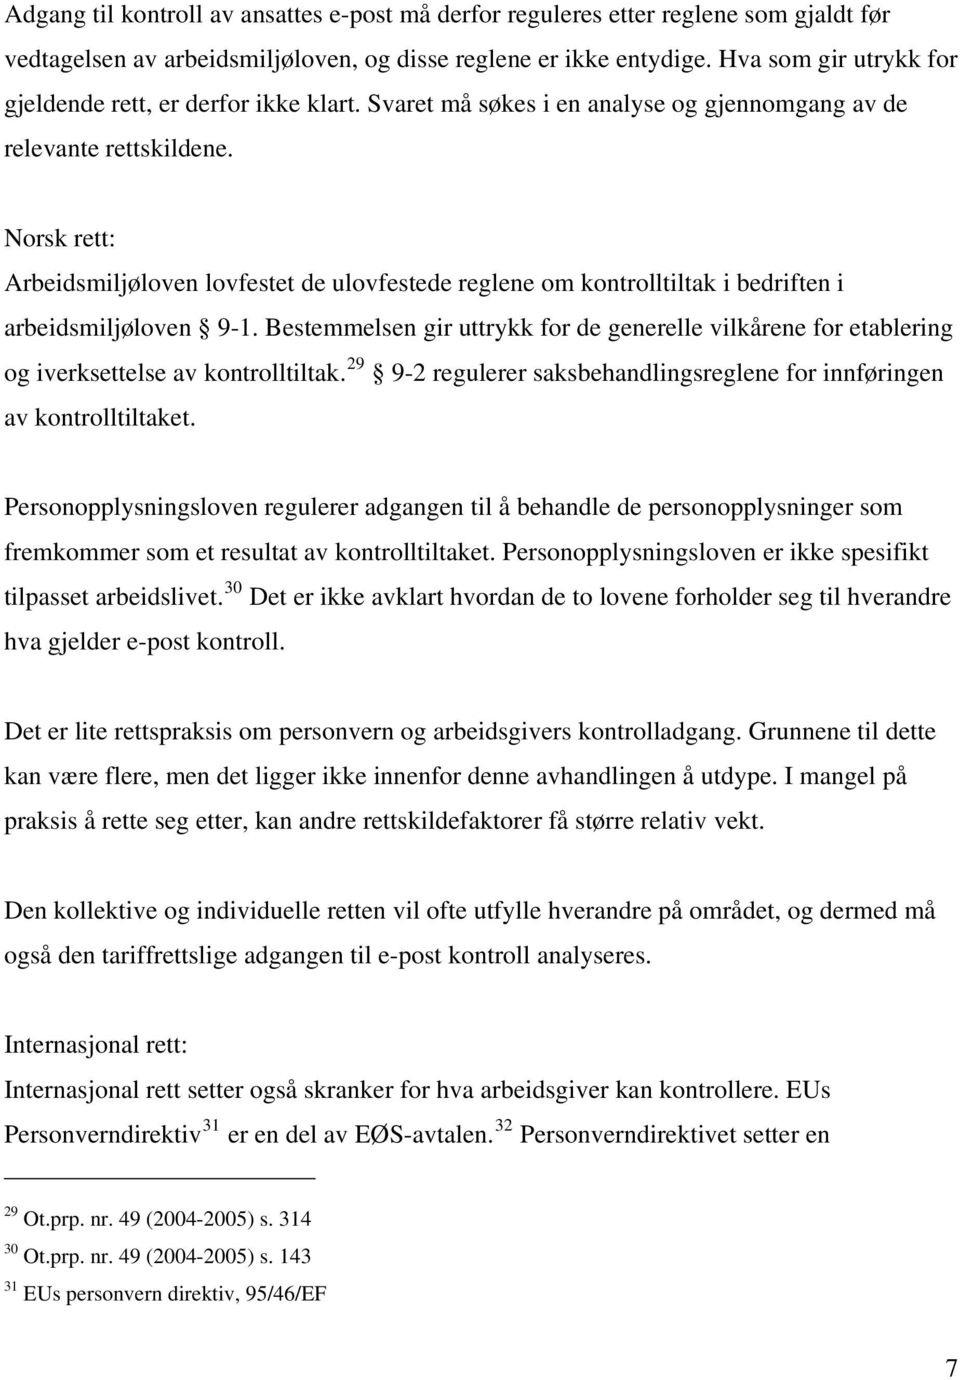 Norsk rett: Arbeidsmiljøloven lovfestet de ulovfestede reglene om kontrolltiltak i bedriften i arbeidsmiljøloven 9-1.